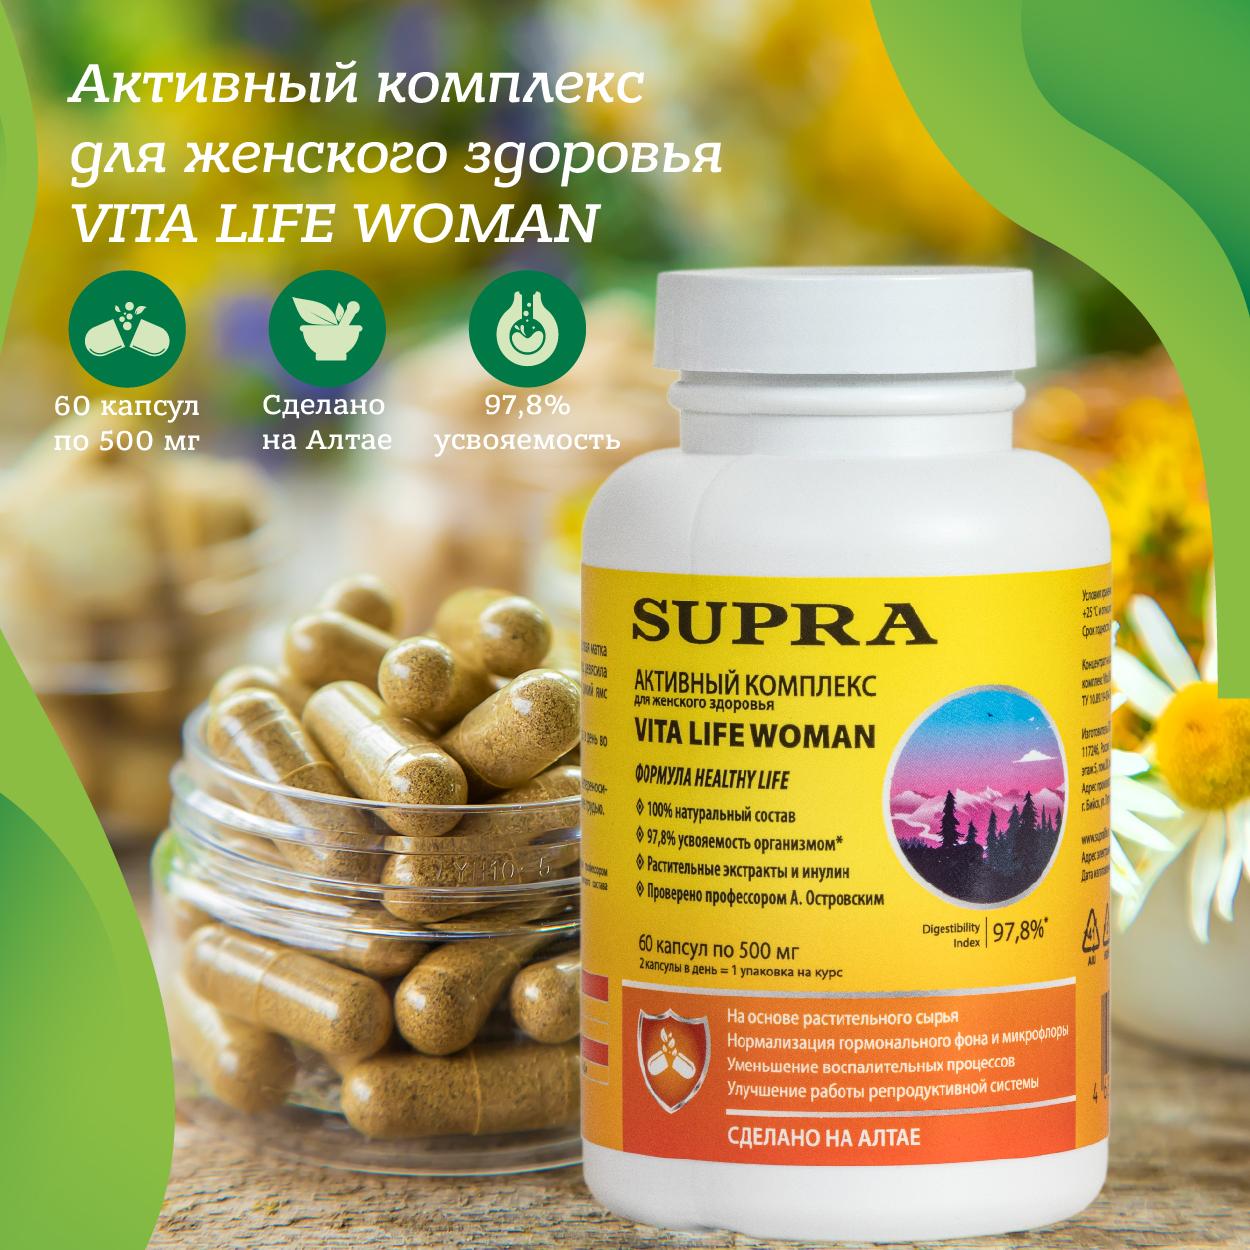 Активный комплекс для женского здоровья Vita Life Woman